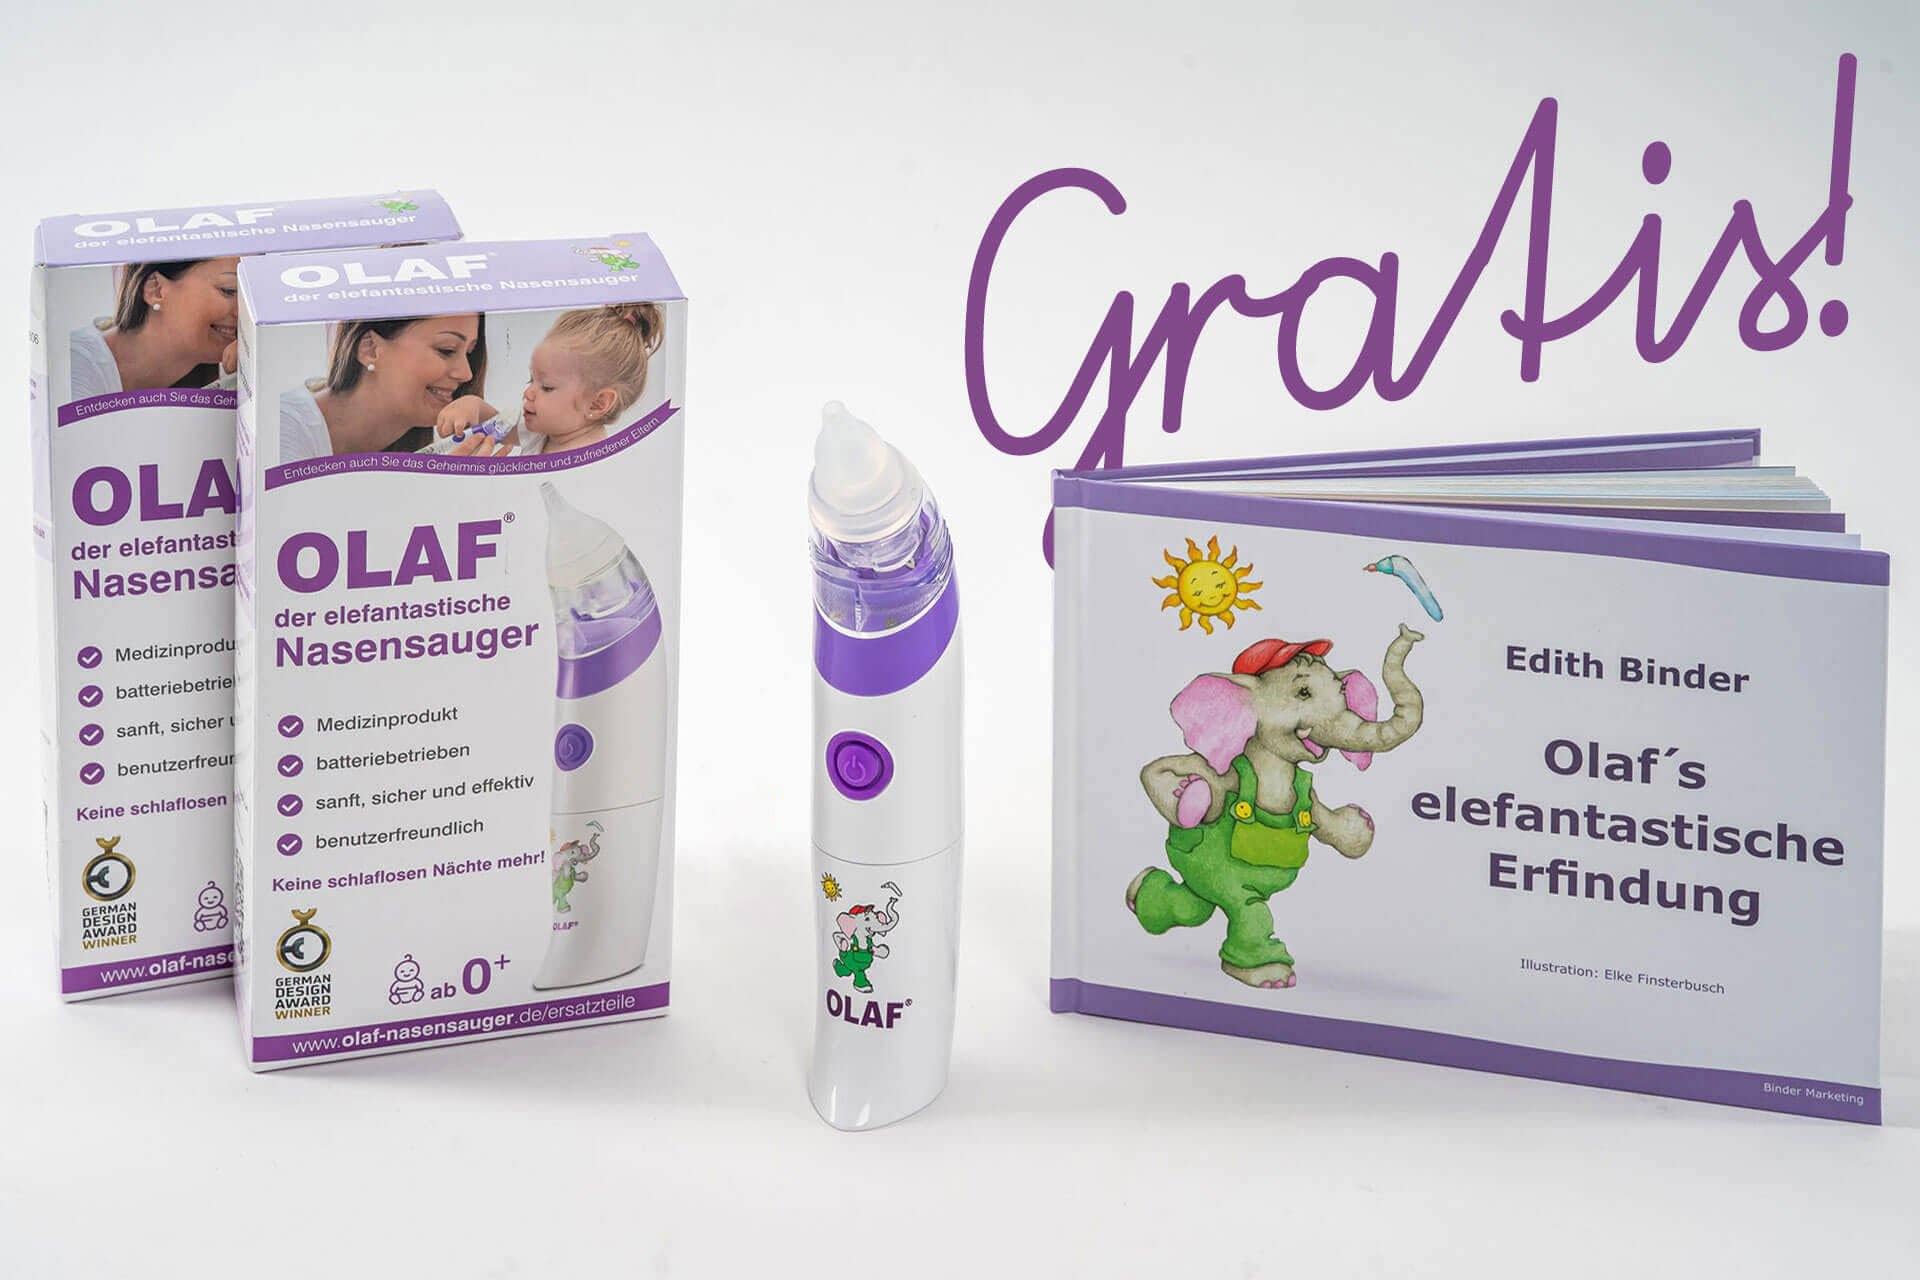 OLAF® Nasensauger im Doppelpack mit einem gratis Kinderbuch – OLAF